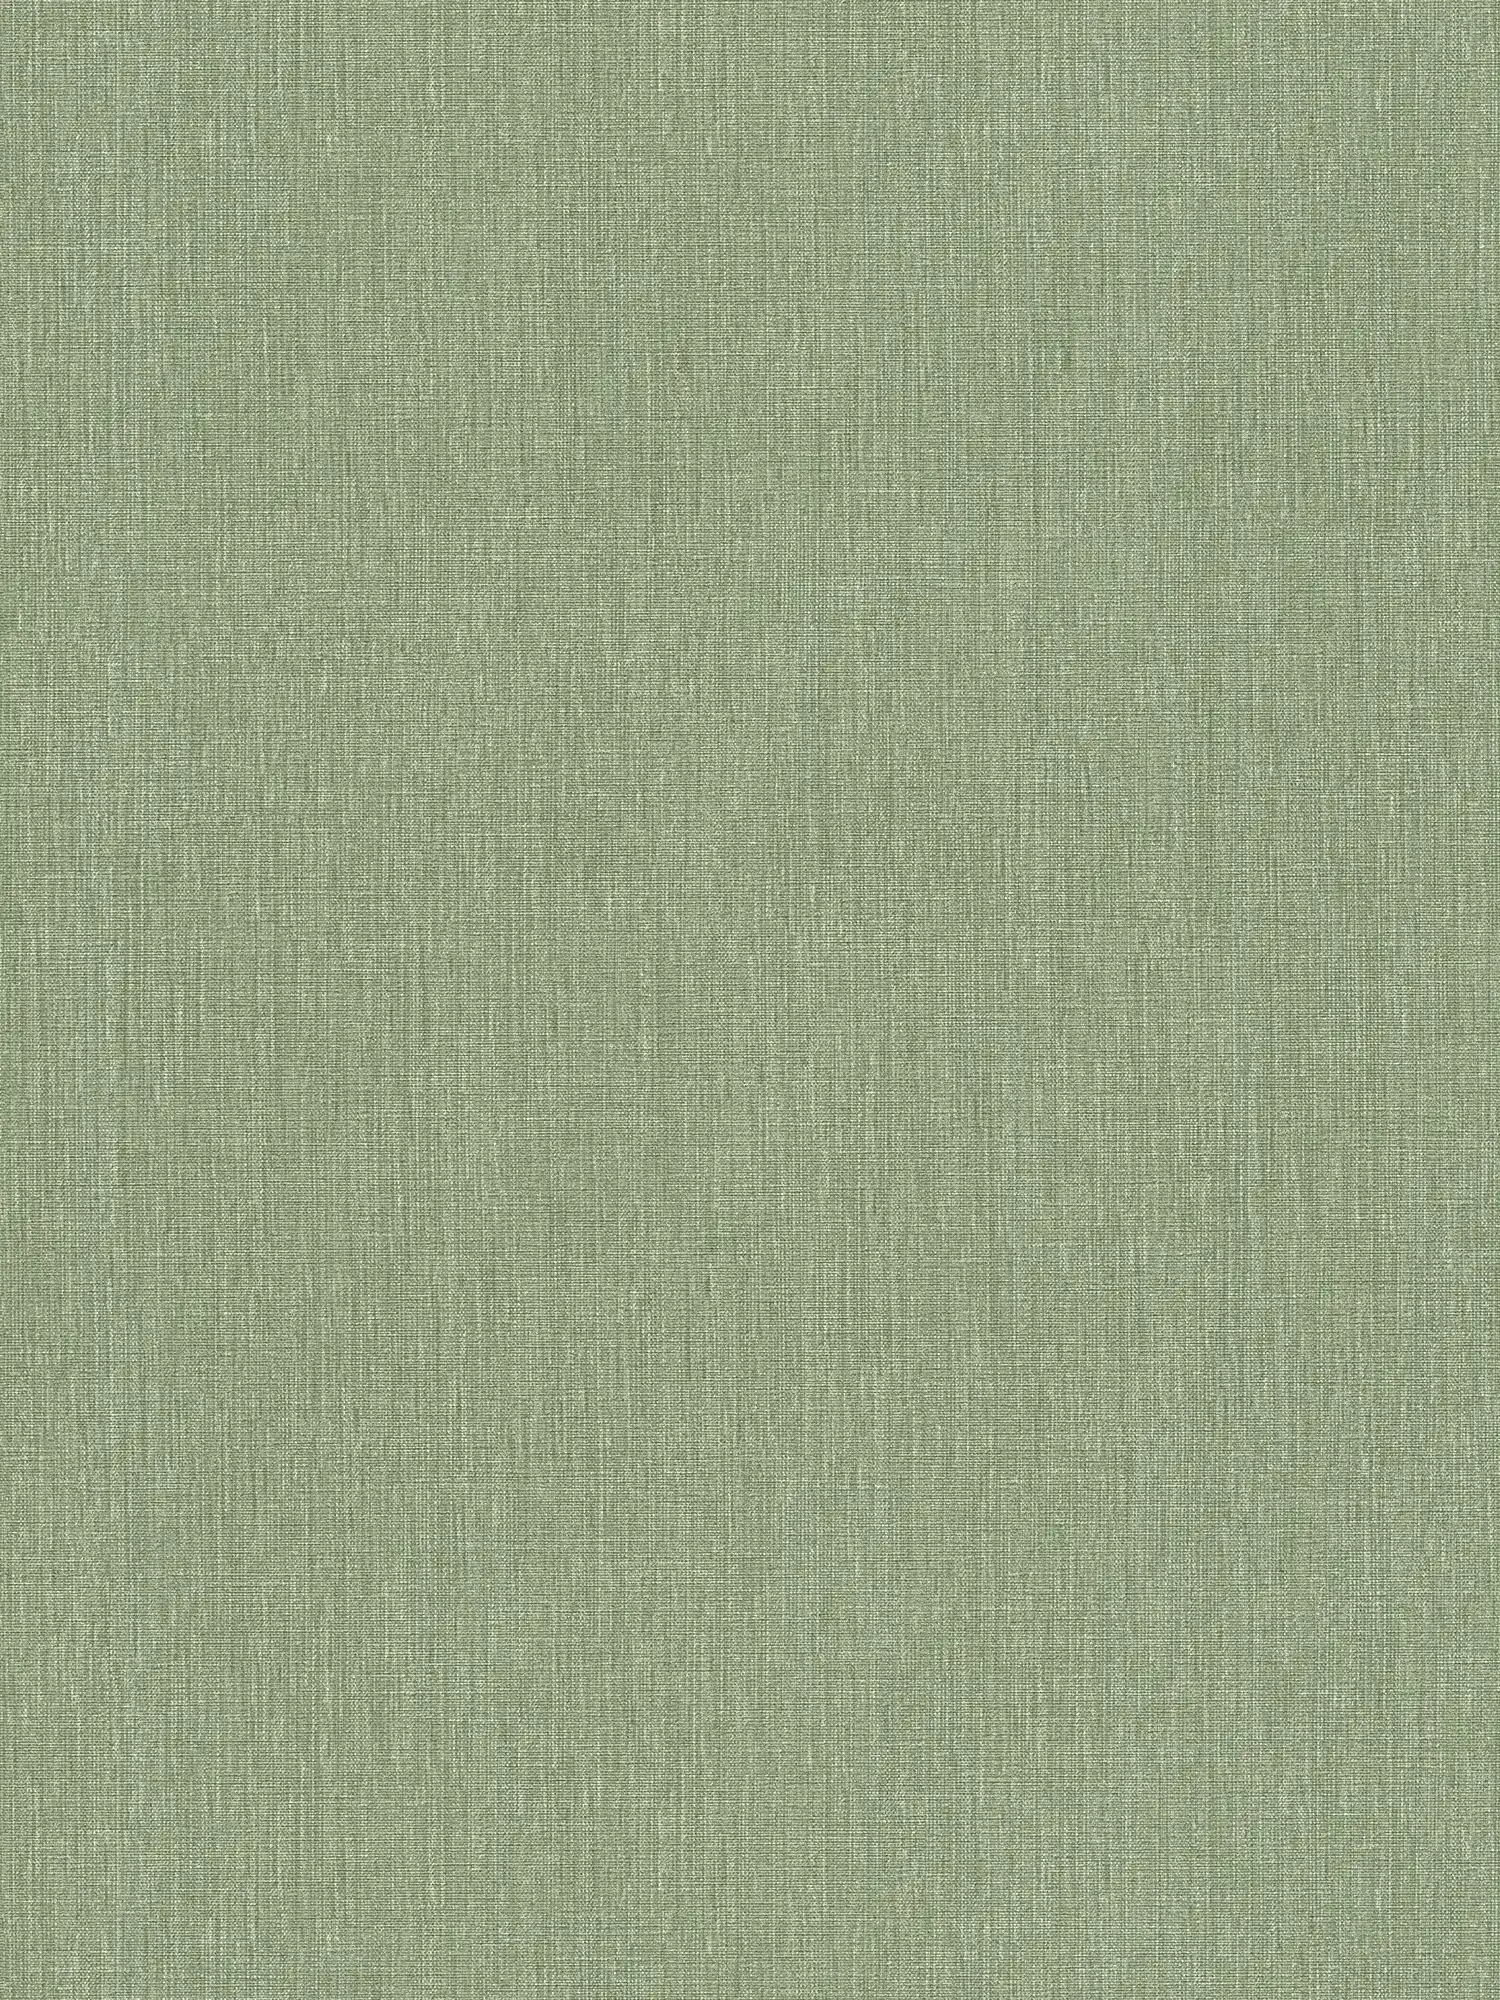 Carta da parati non tessuta a trama leggera in look tessile - verde
